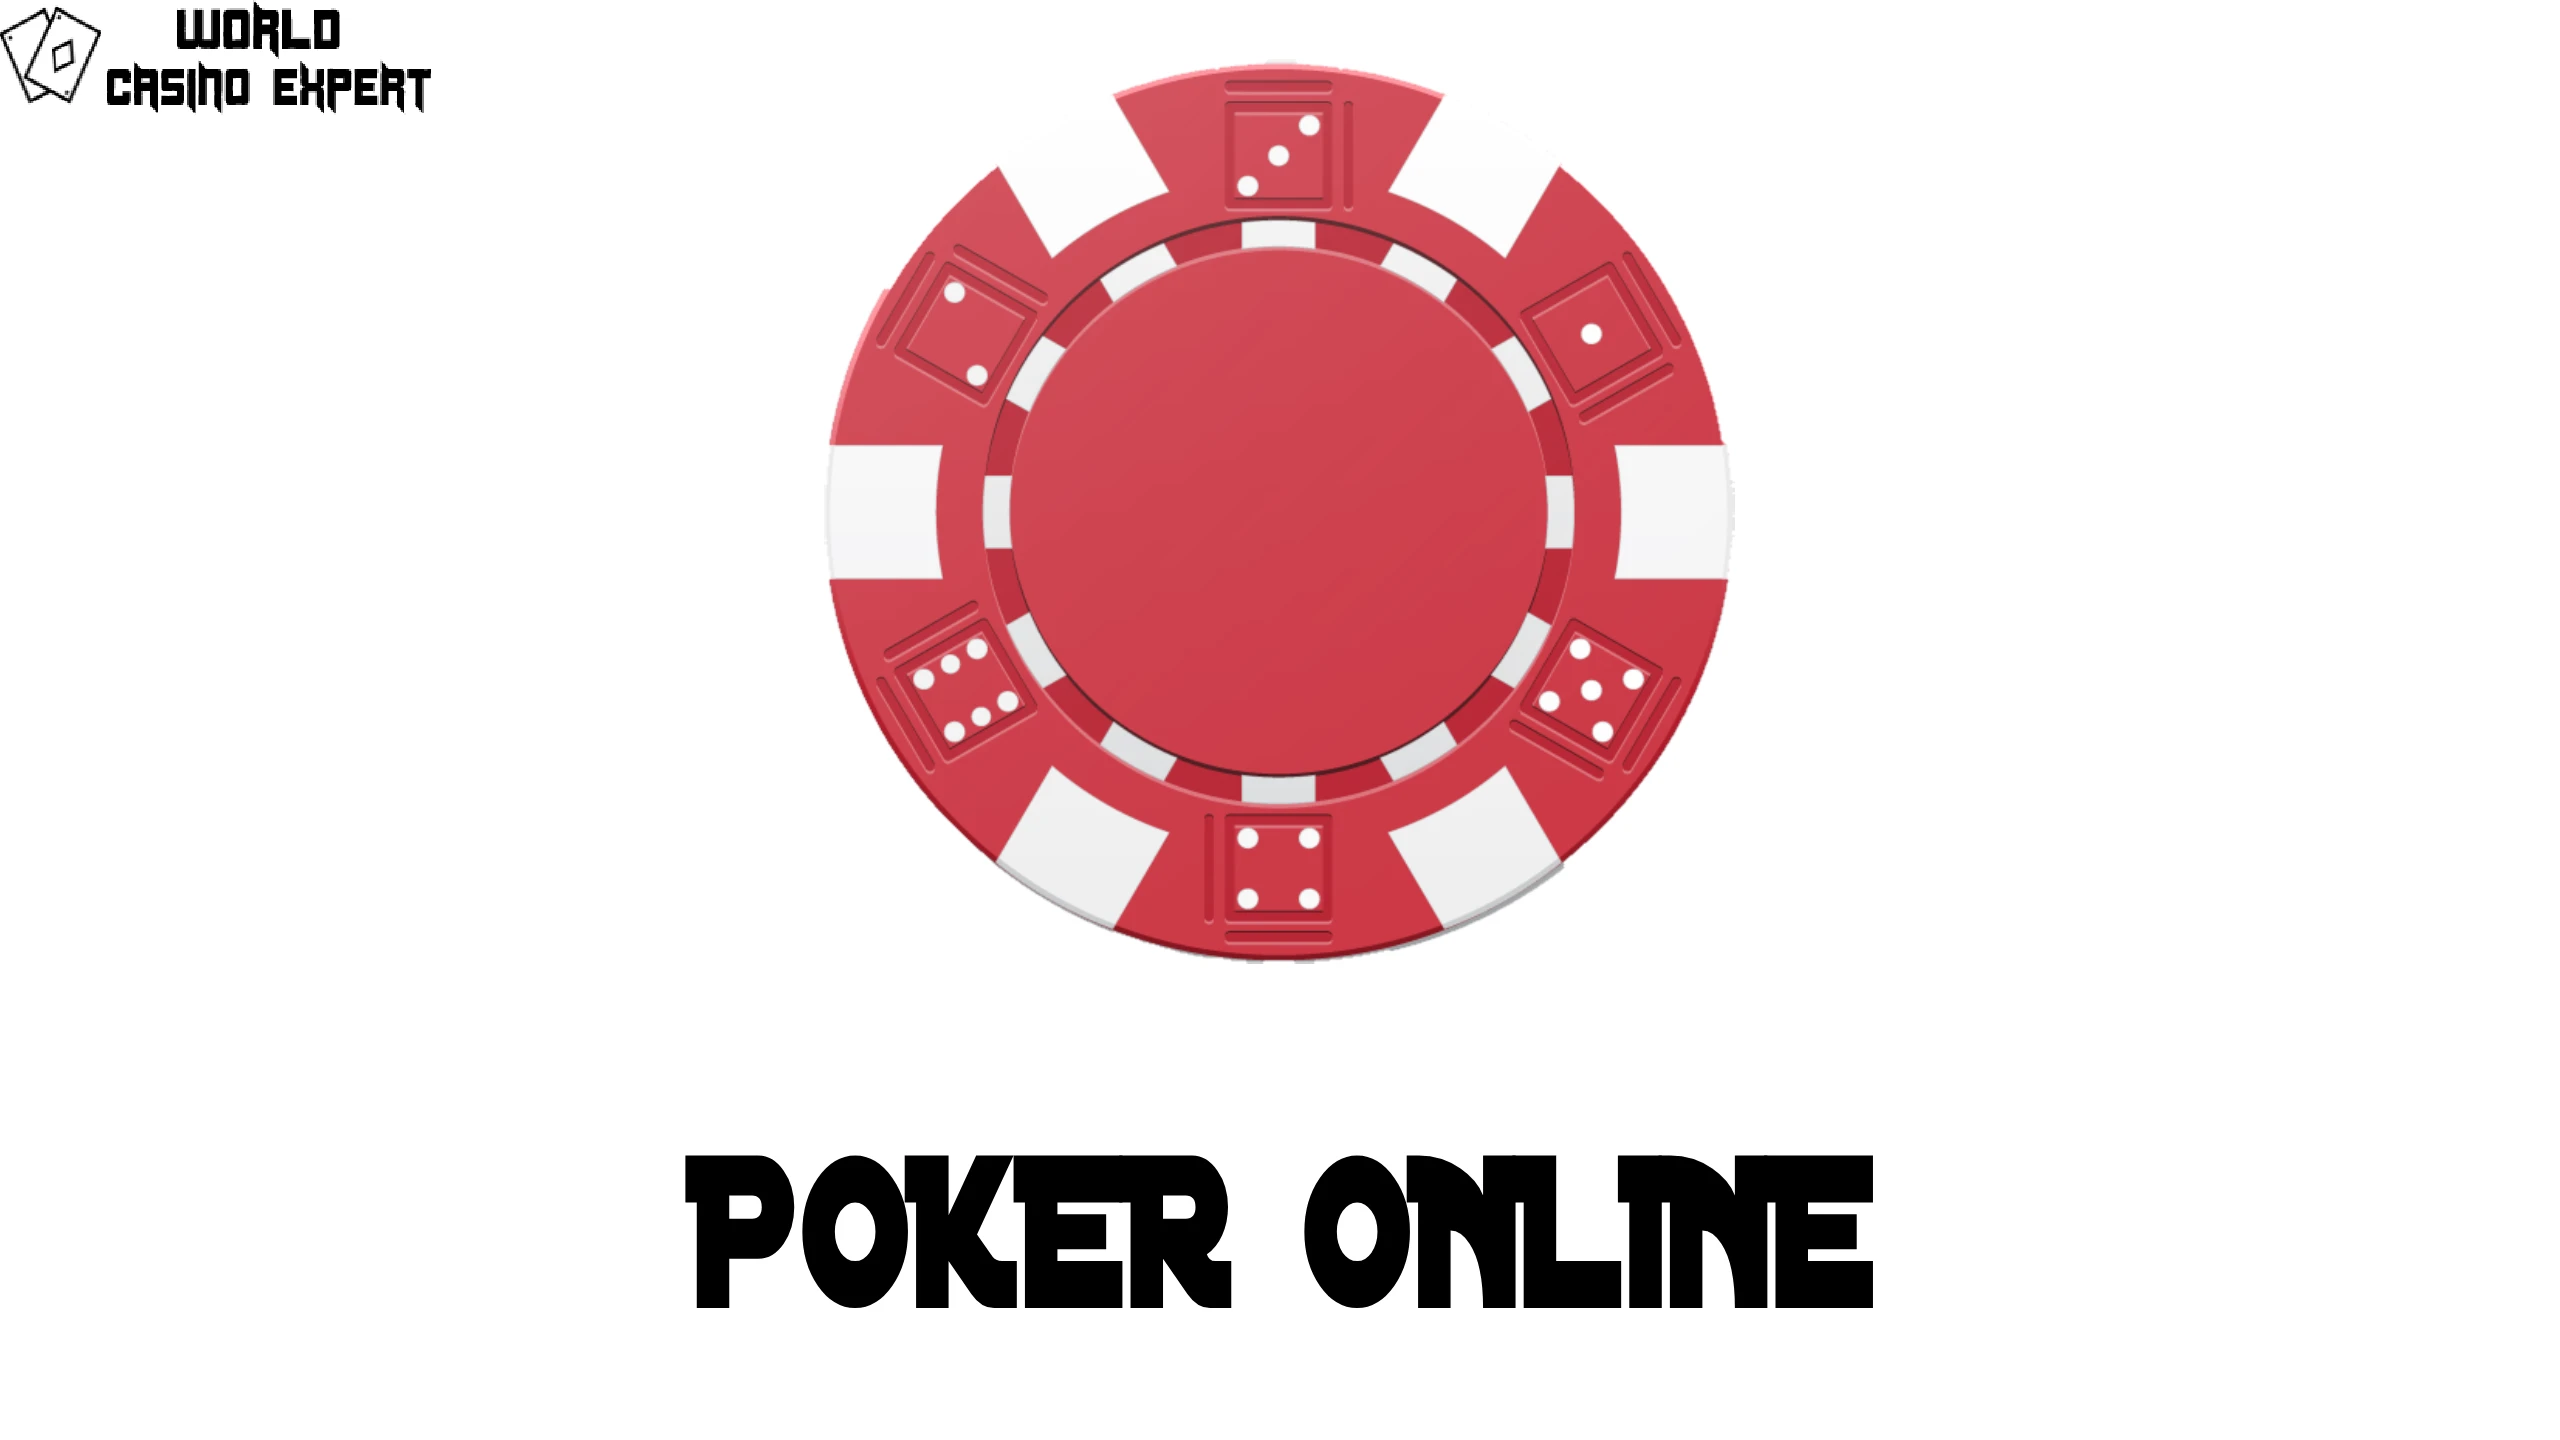 Online Poker | World Casino Expert